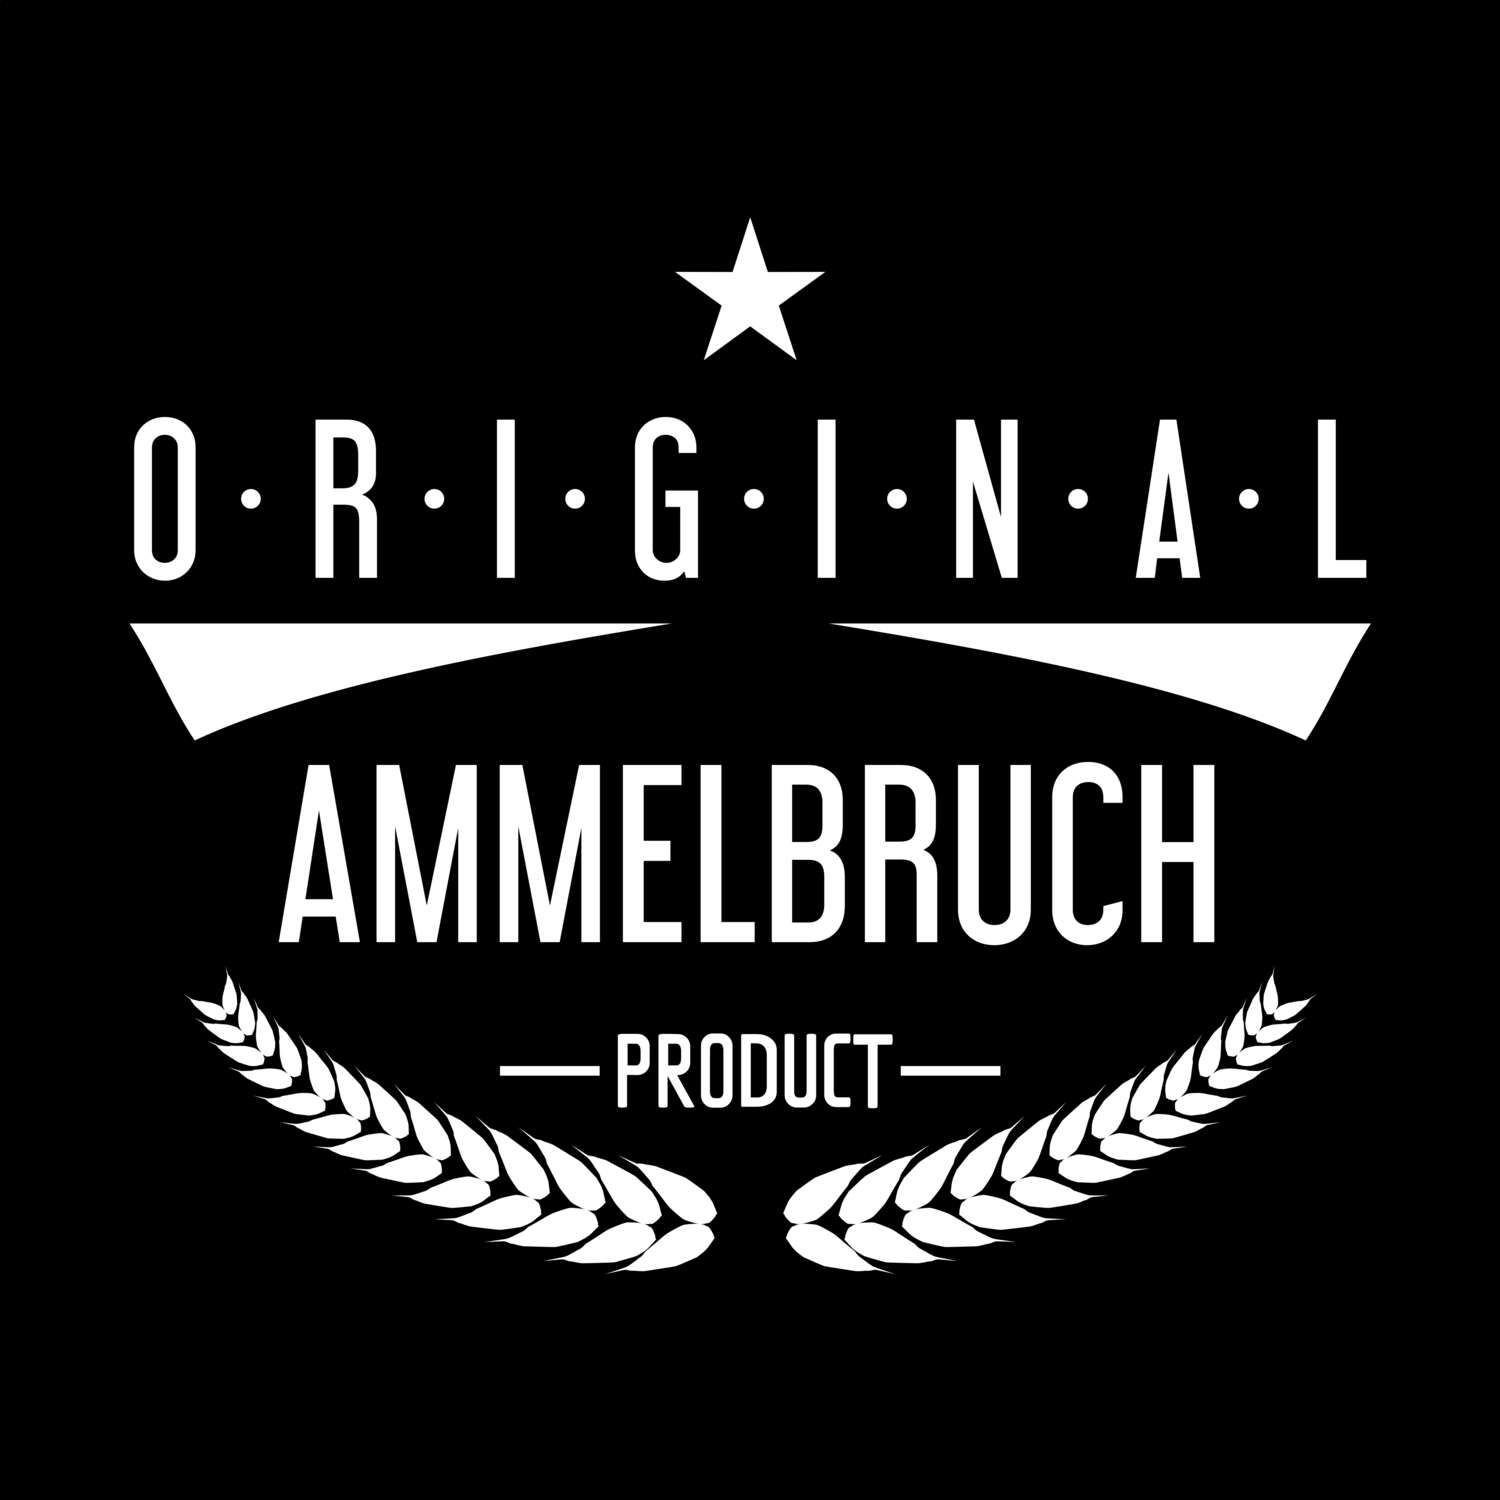 Ammelbruch T-Shirt »Original Product«